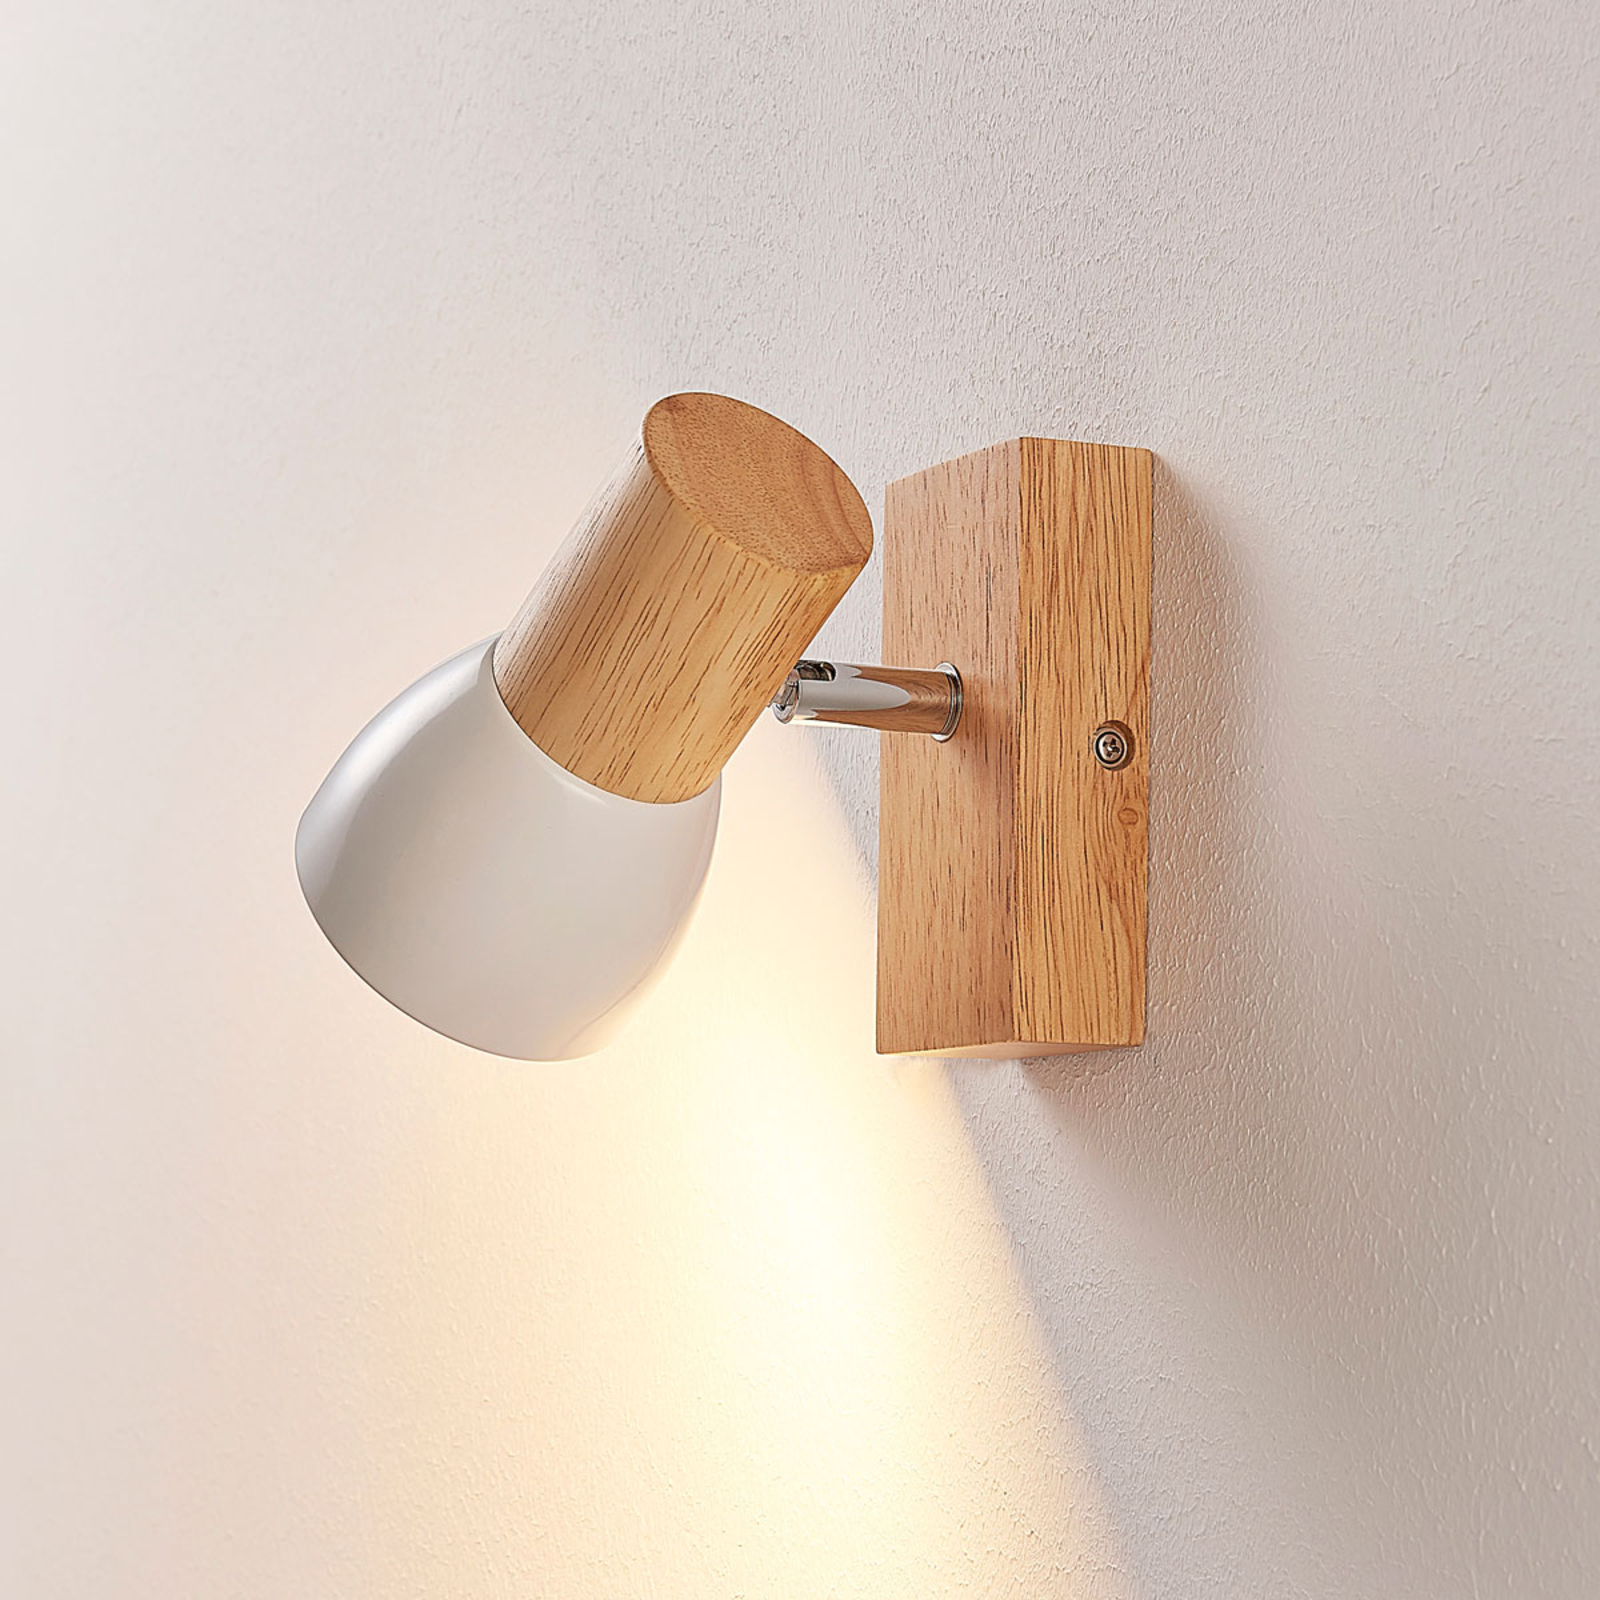 Aan boord wasmiddel onthouden Mooie houten spot met witte metalen kap | Lampen24.nl